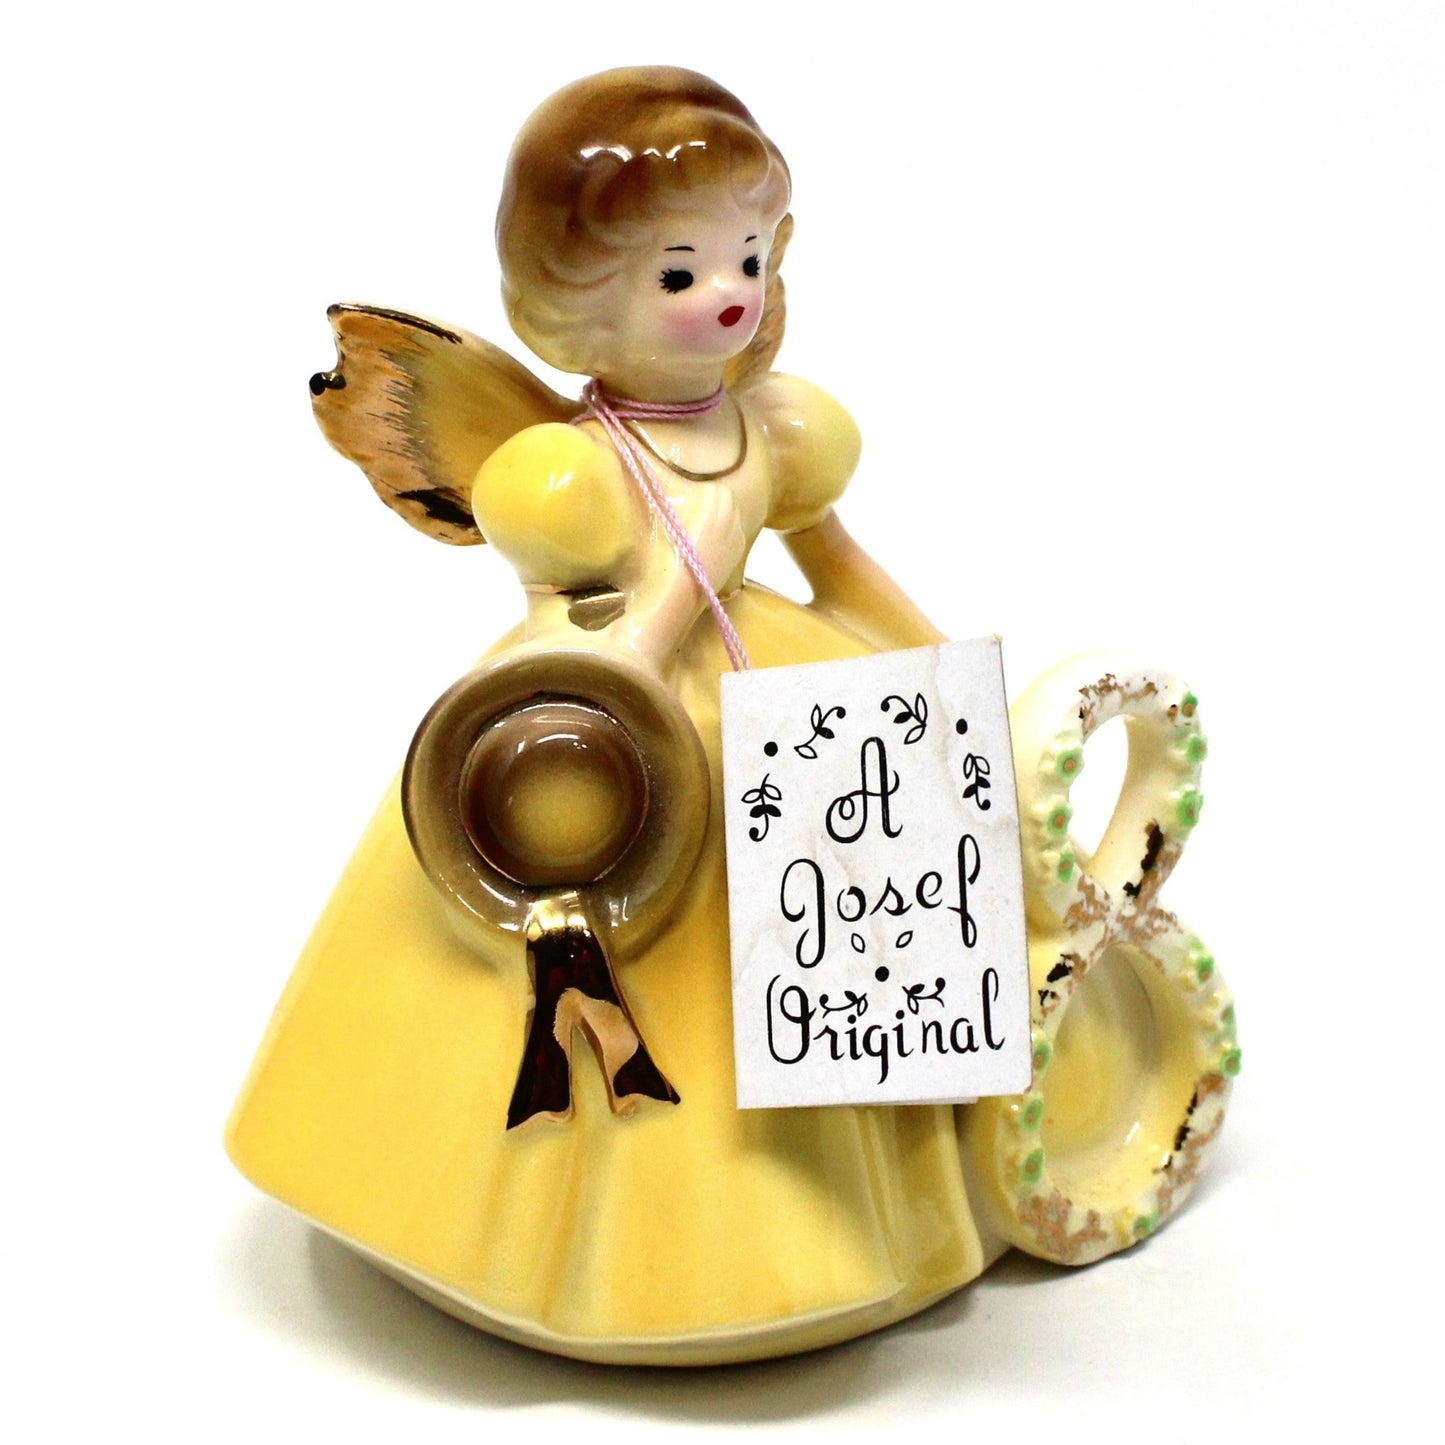 Figurine, Josef Originals Birthday Angel, 8 Years, Yellow Dress